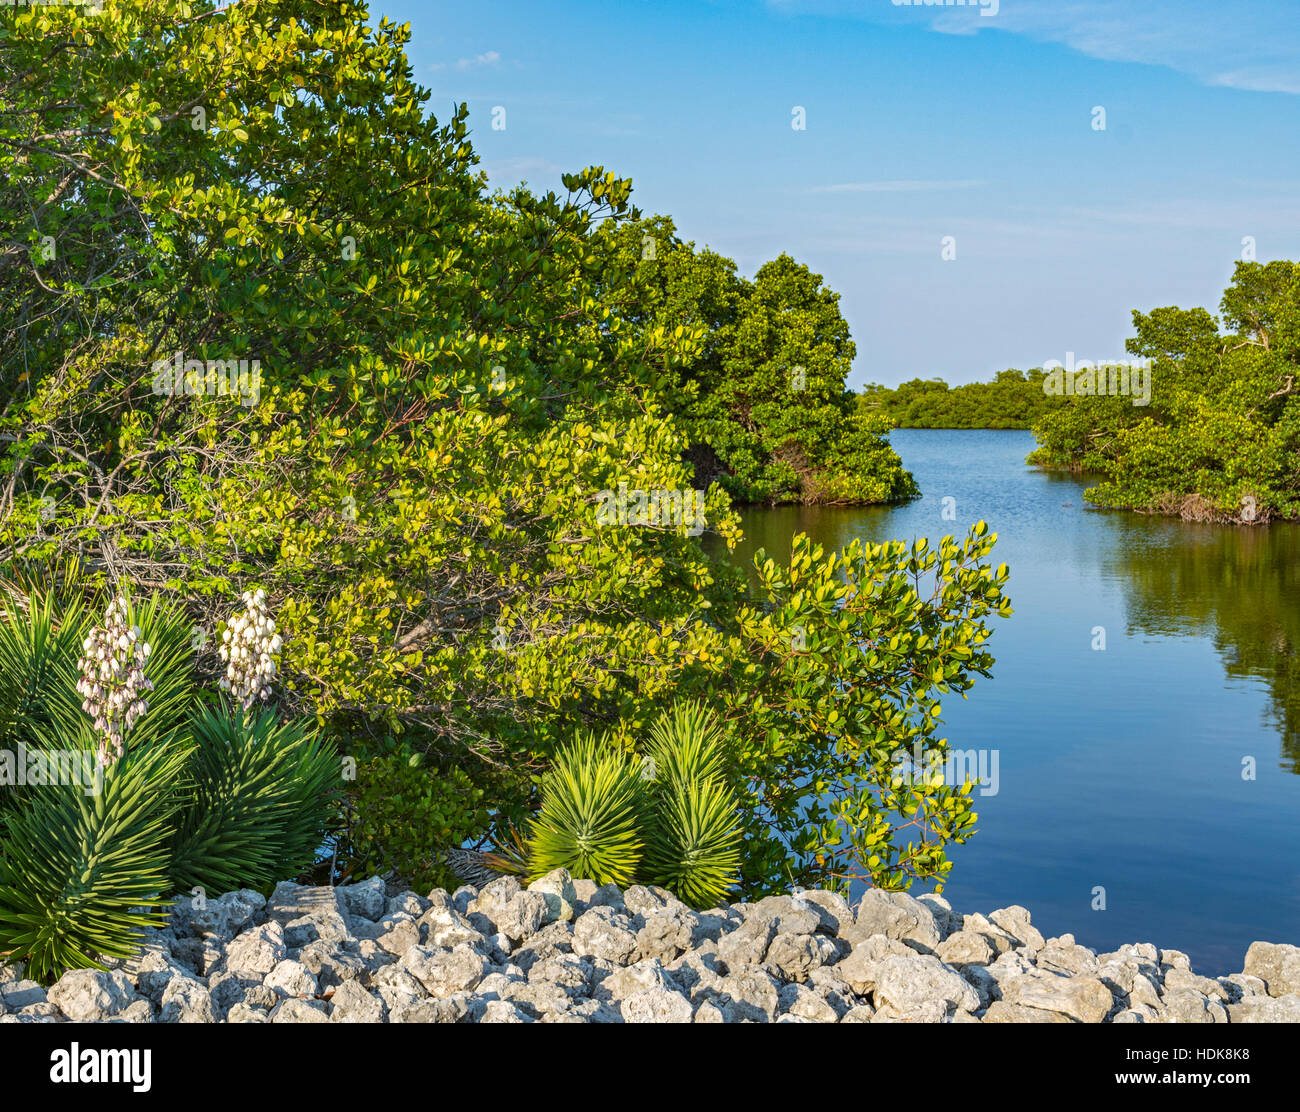 Florida, Sanibel Island, J.N. "Ding" Darling National Wildlife Refuge, vista desde la unidad de Vida Silvestre, palmeras, manglares Foto de stock